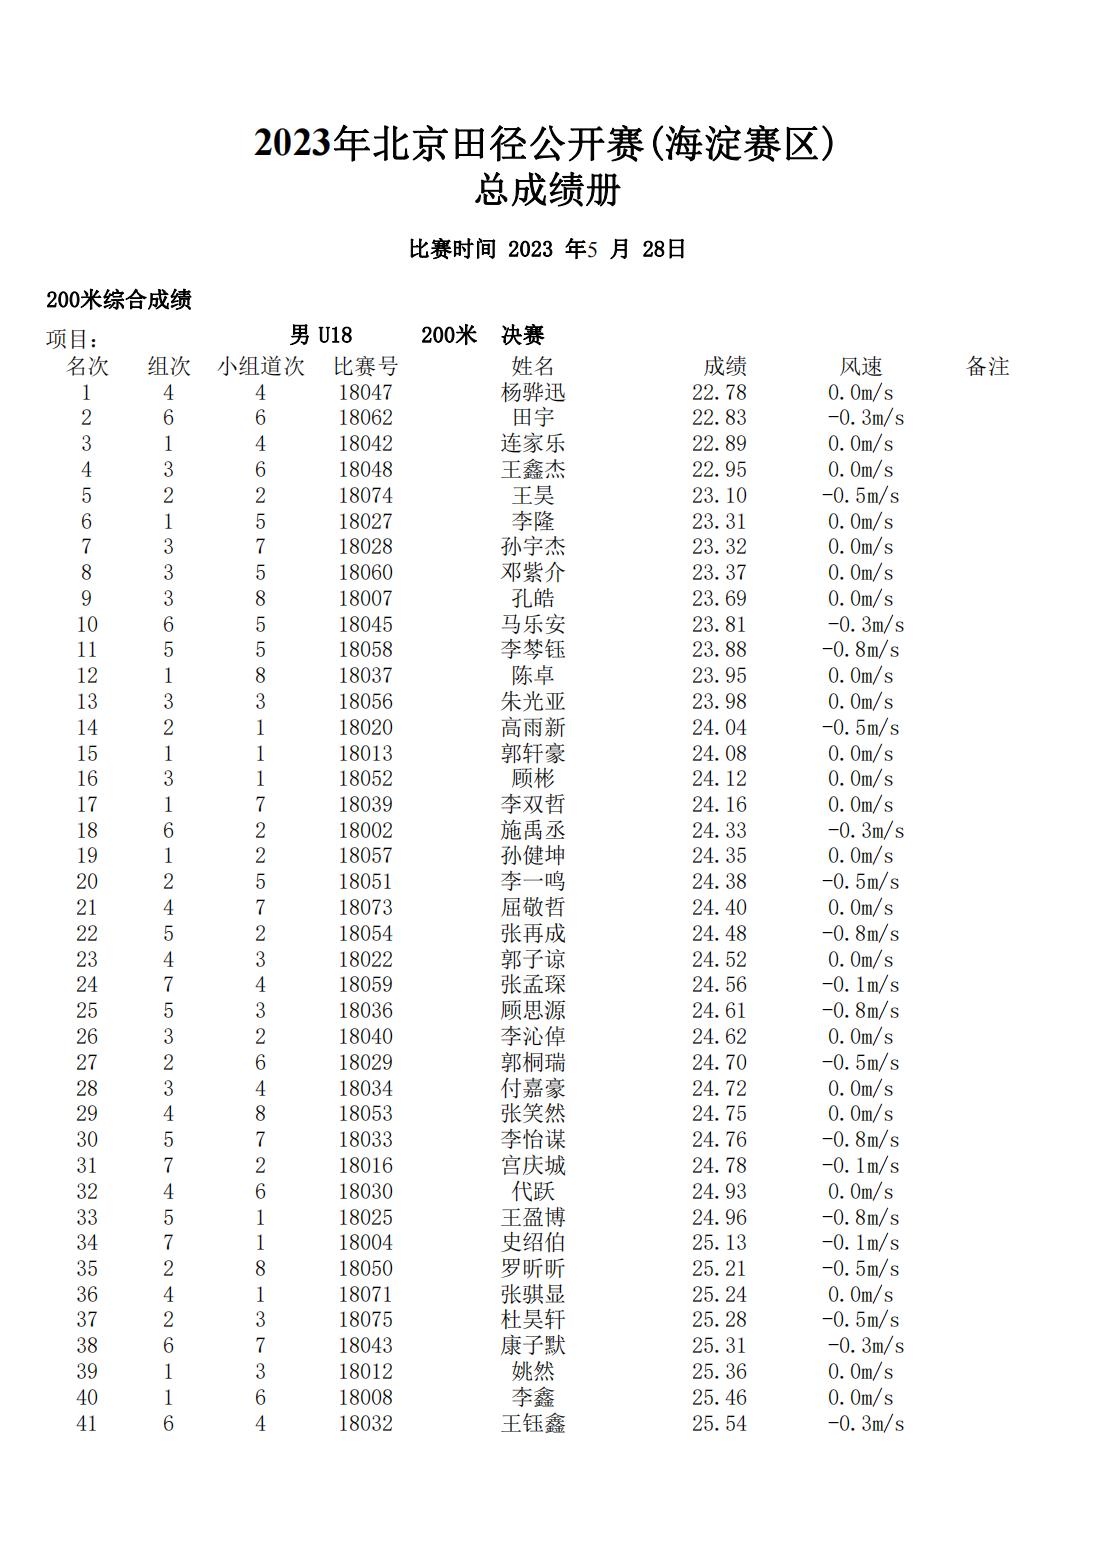 2023年北京田径公开赛(海淀赛区)总成绩册_00.jpg